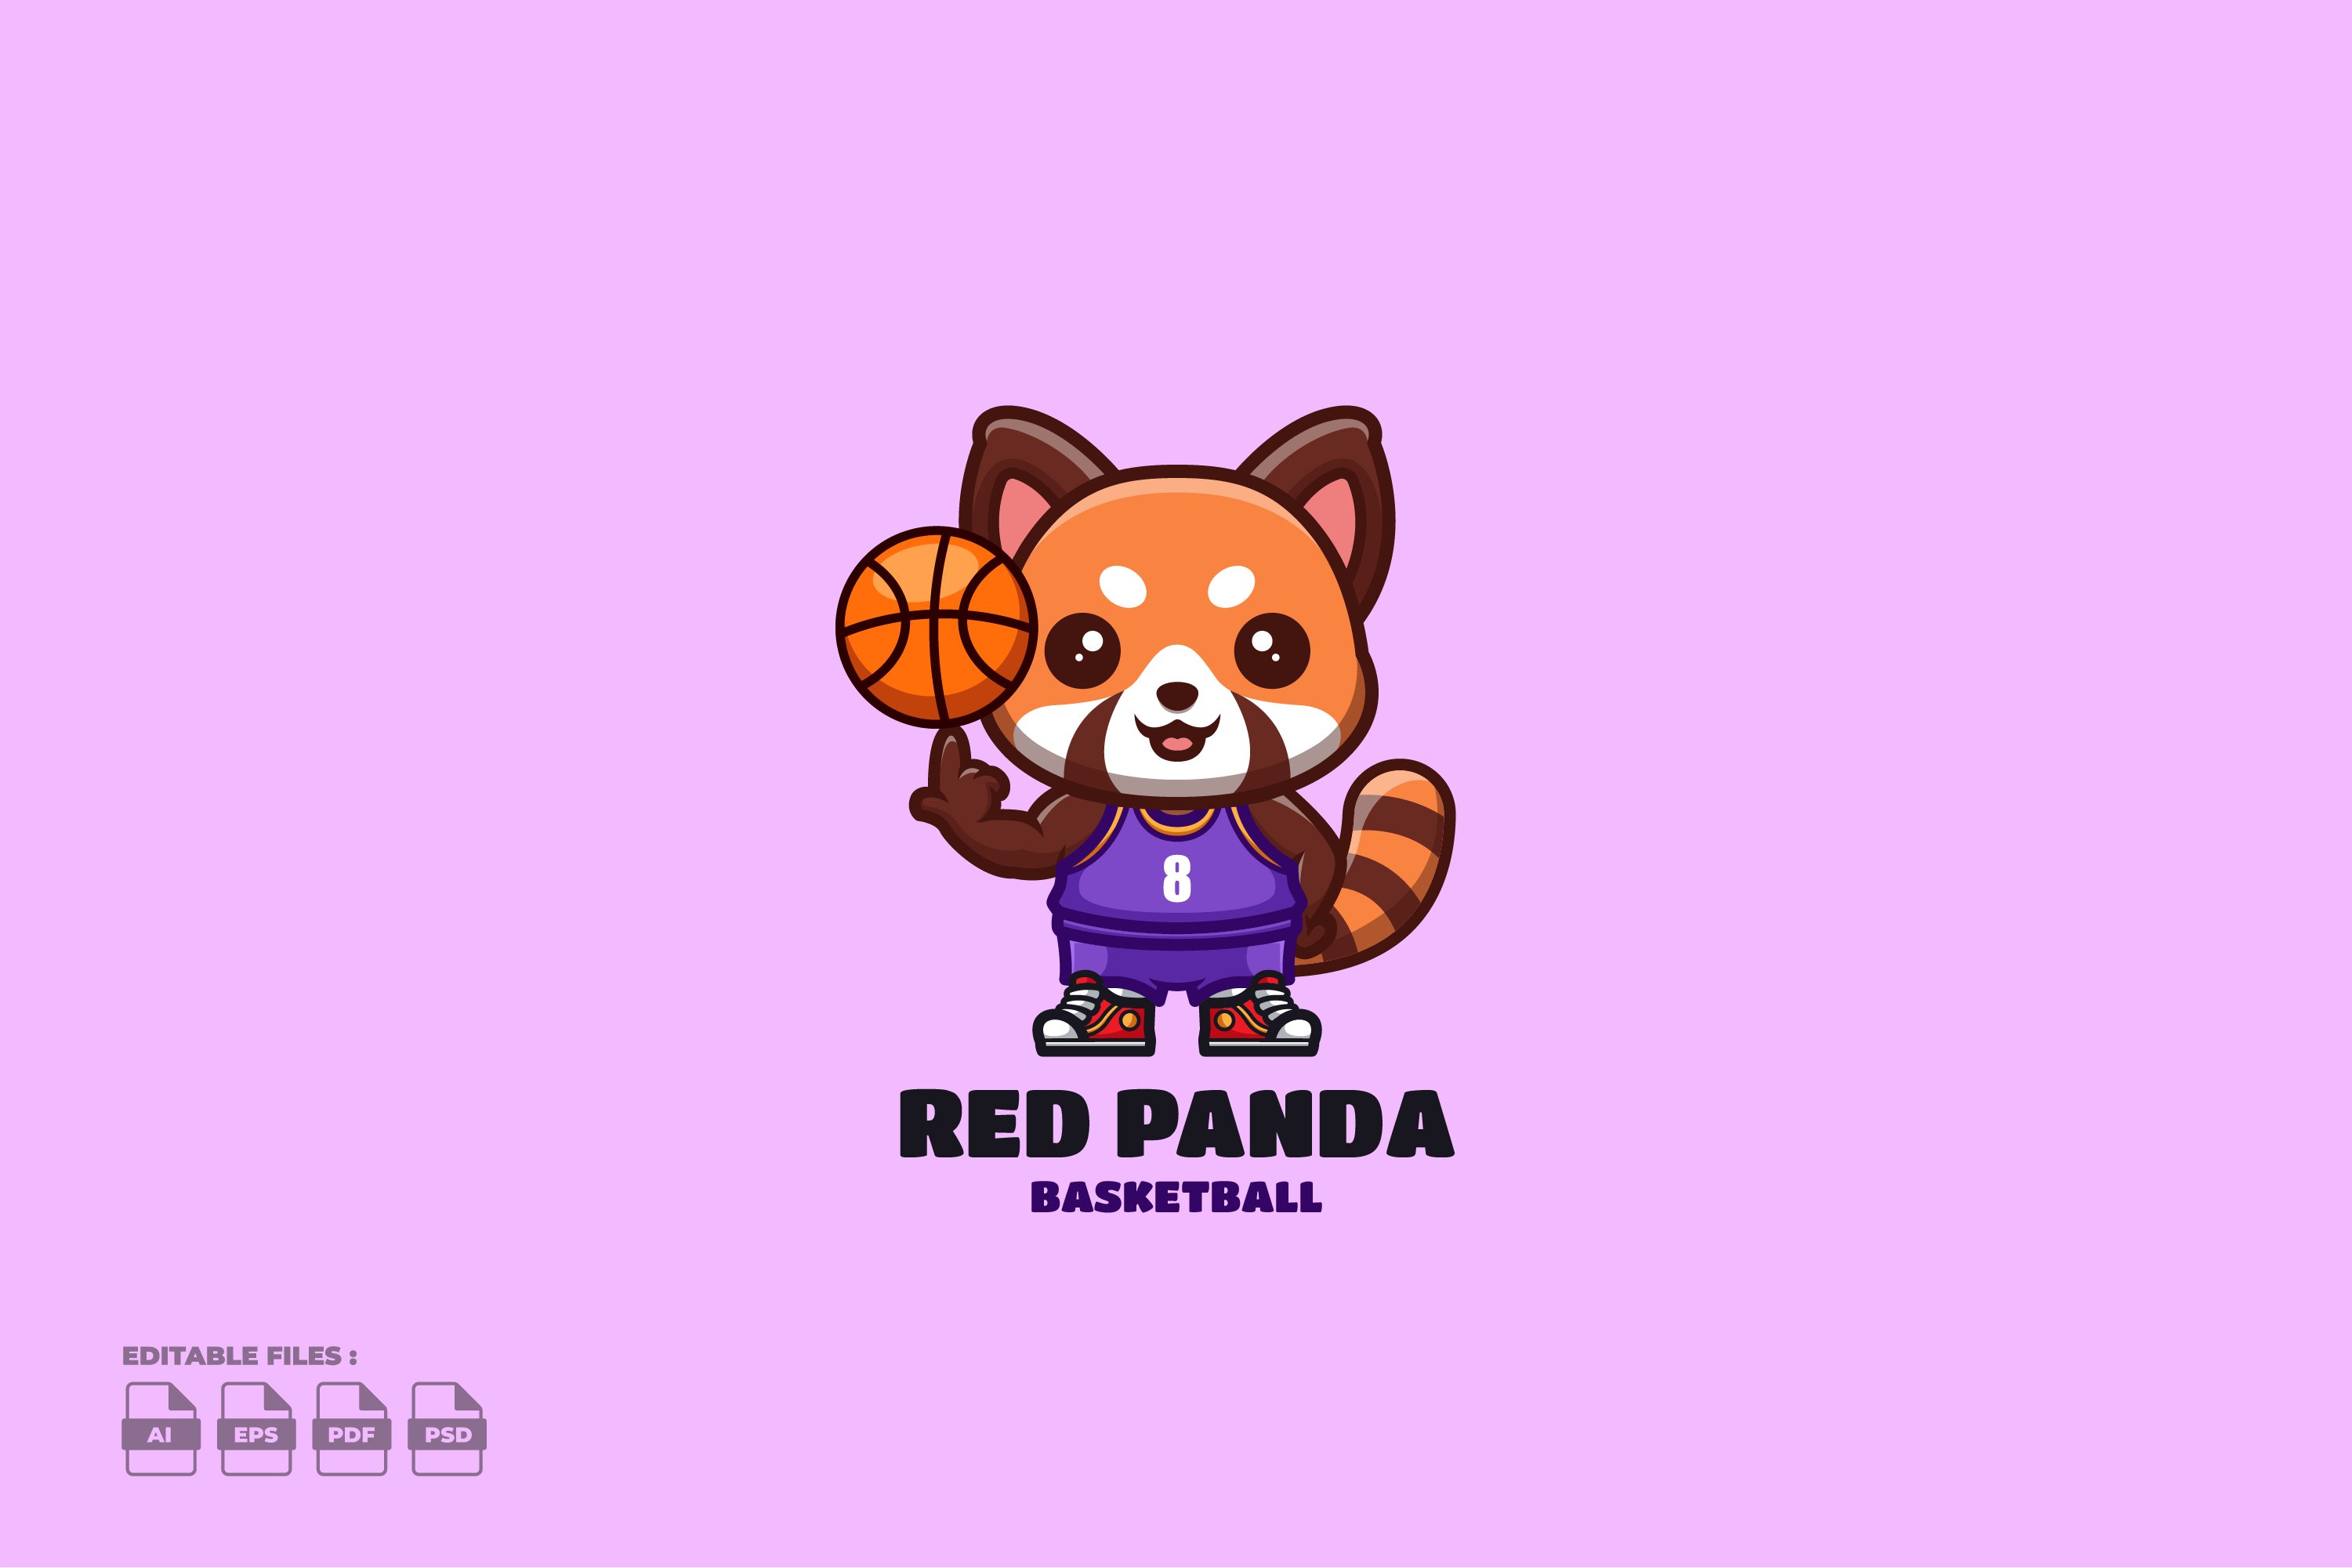 Basketball Red Panda Cute Mascot Log cover image.